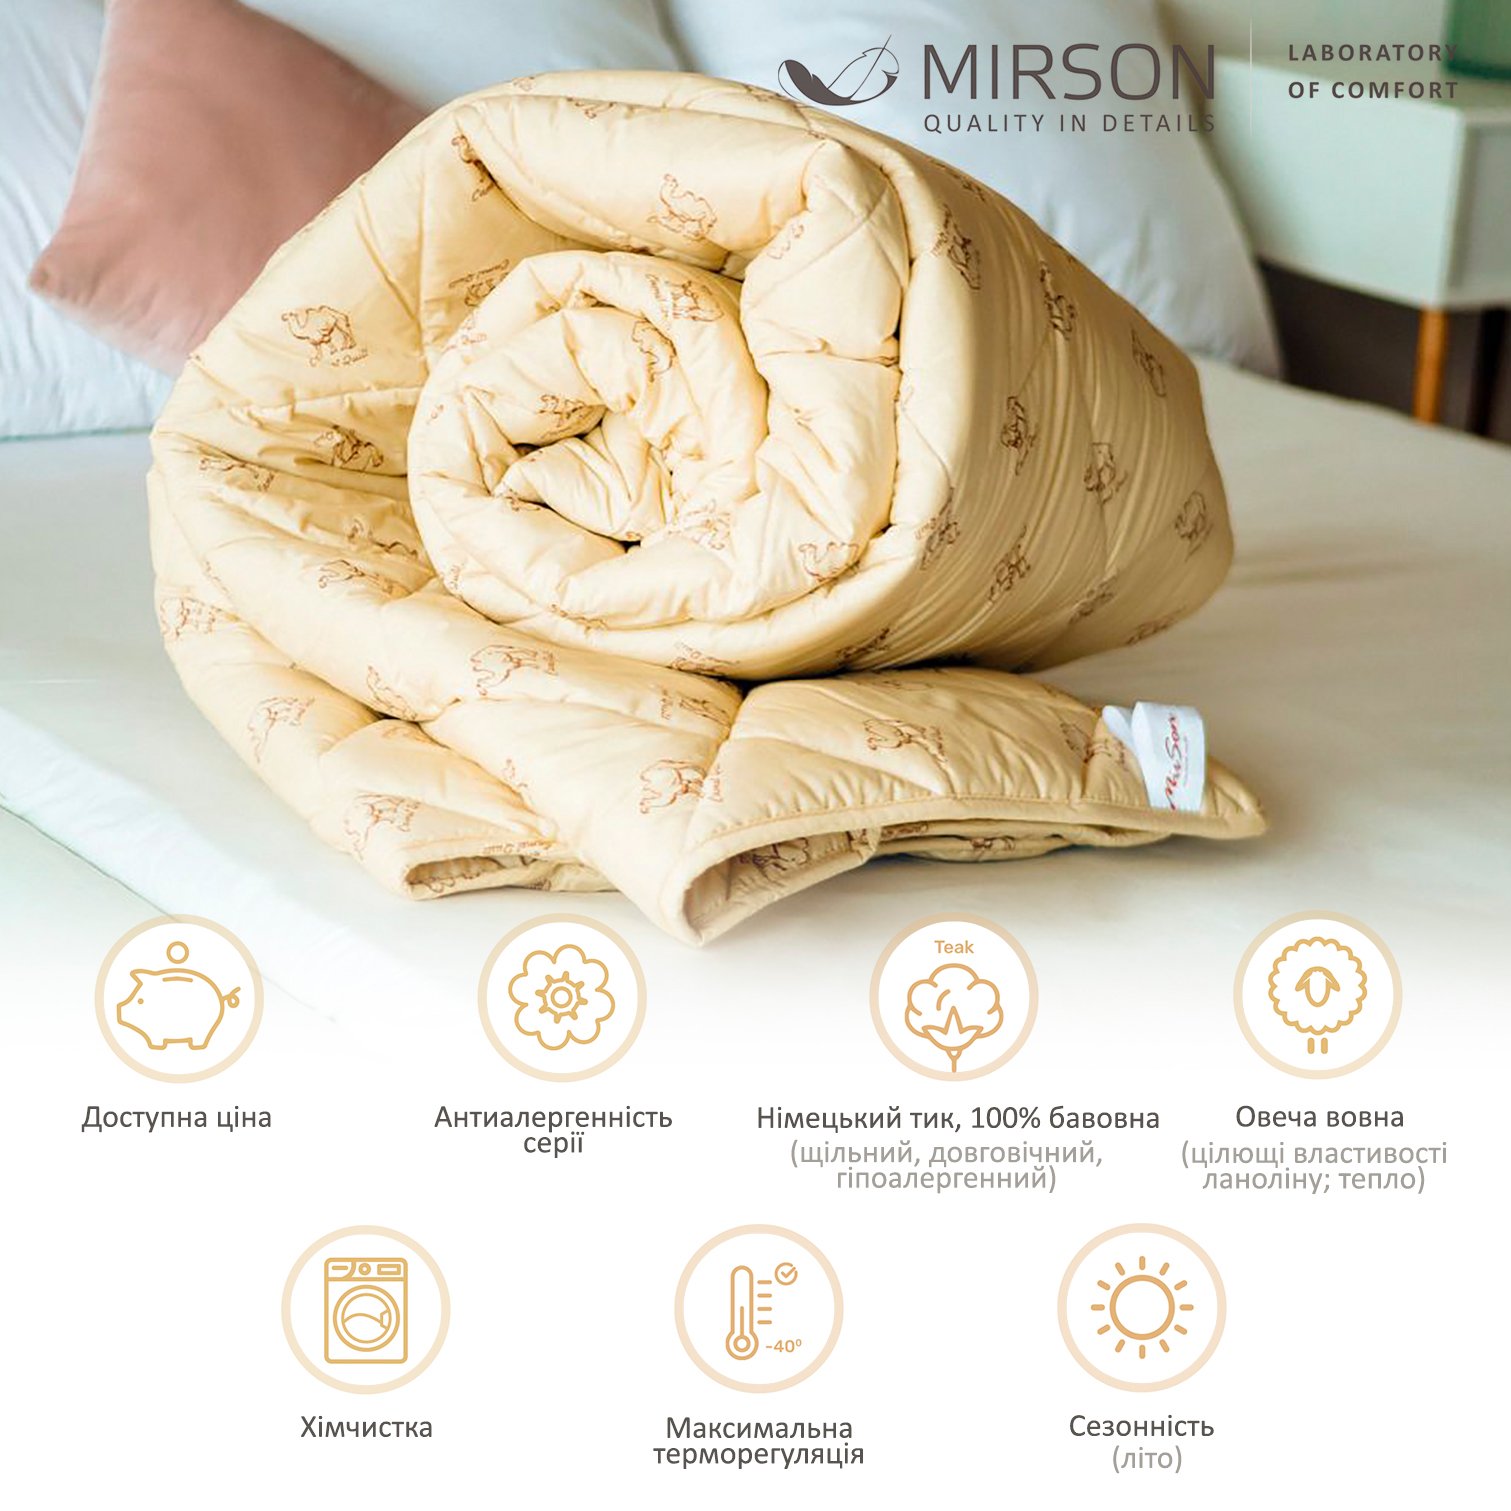 Одеяло шерстяное MirSon Gold Camel №022, летнее, 140x205 см, кремовое - фото 5